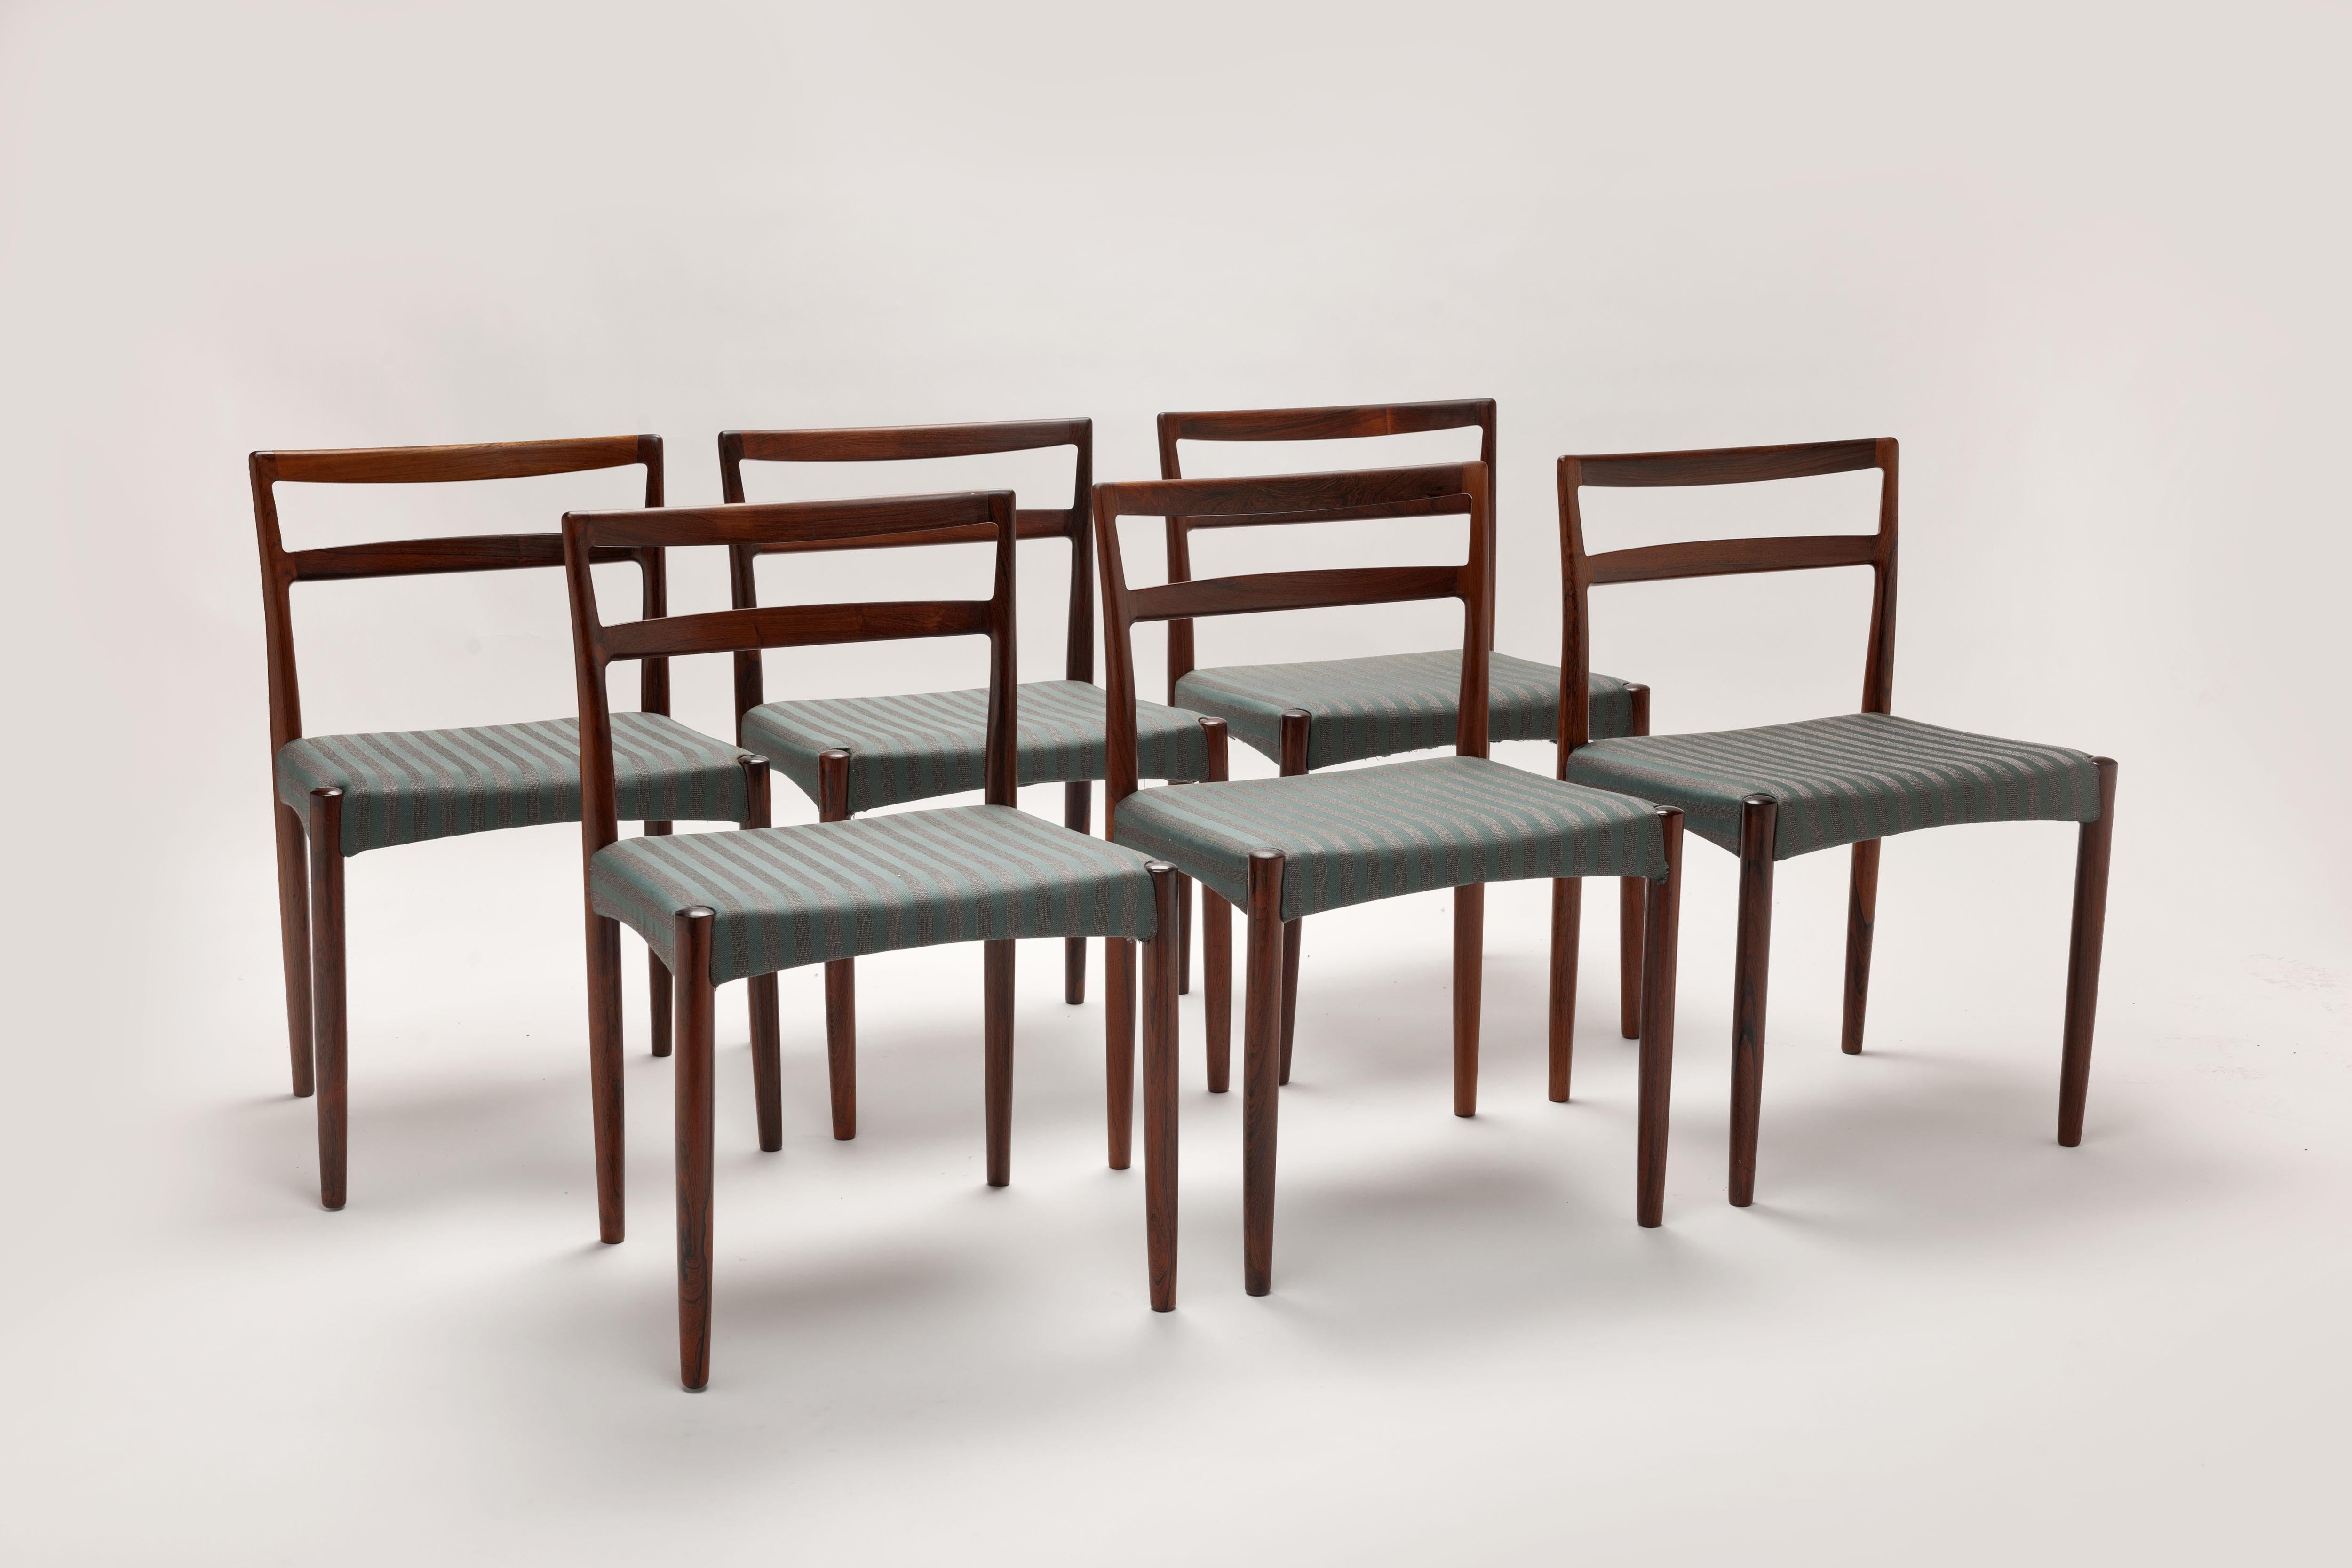 Ensemble de six chaises de salle à manger en palissandre massif conçues en 1961 par le designer danois Harry Østergaard. Fabriqué au Danemark par Randers Møbelfabrik dans les années 1960, avec de beaux détails d'articulation à l'arrière des pieds.